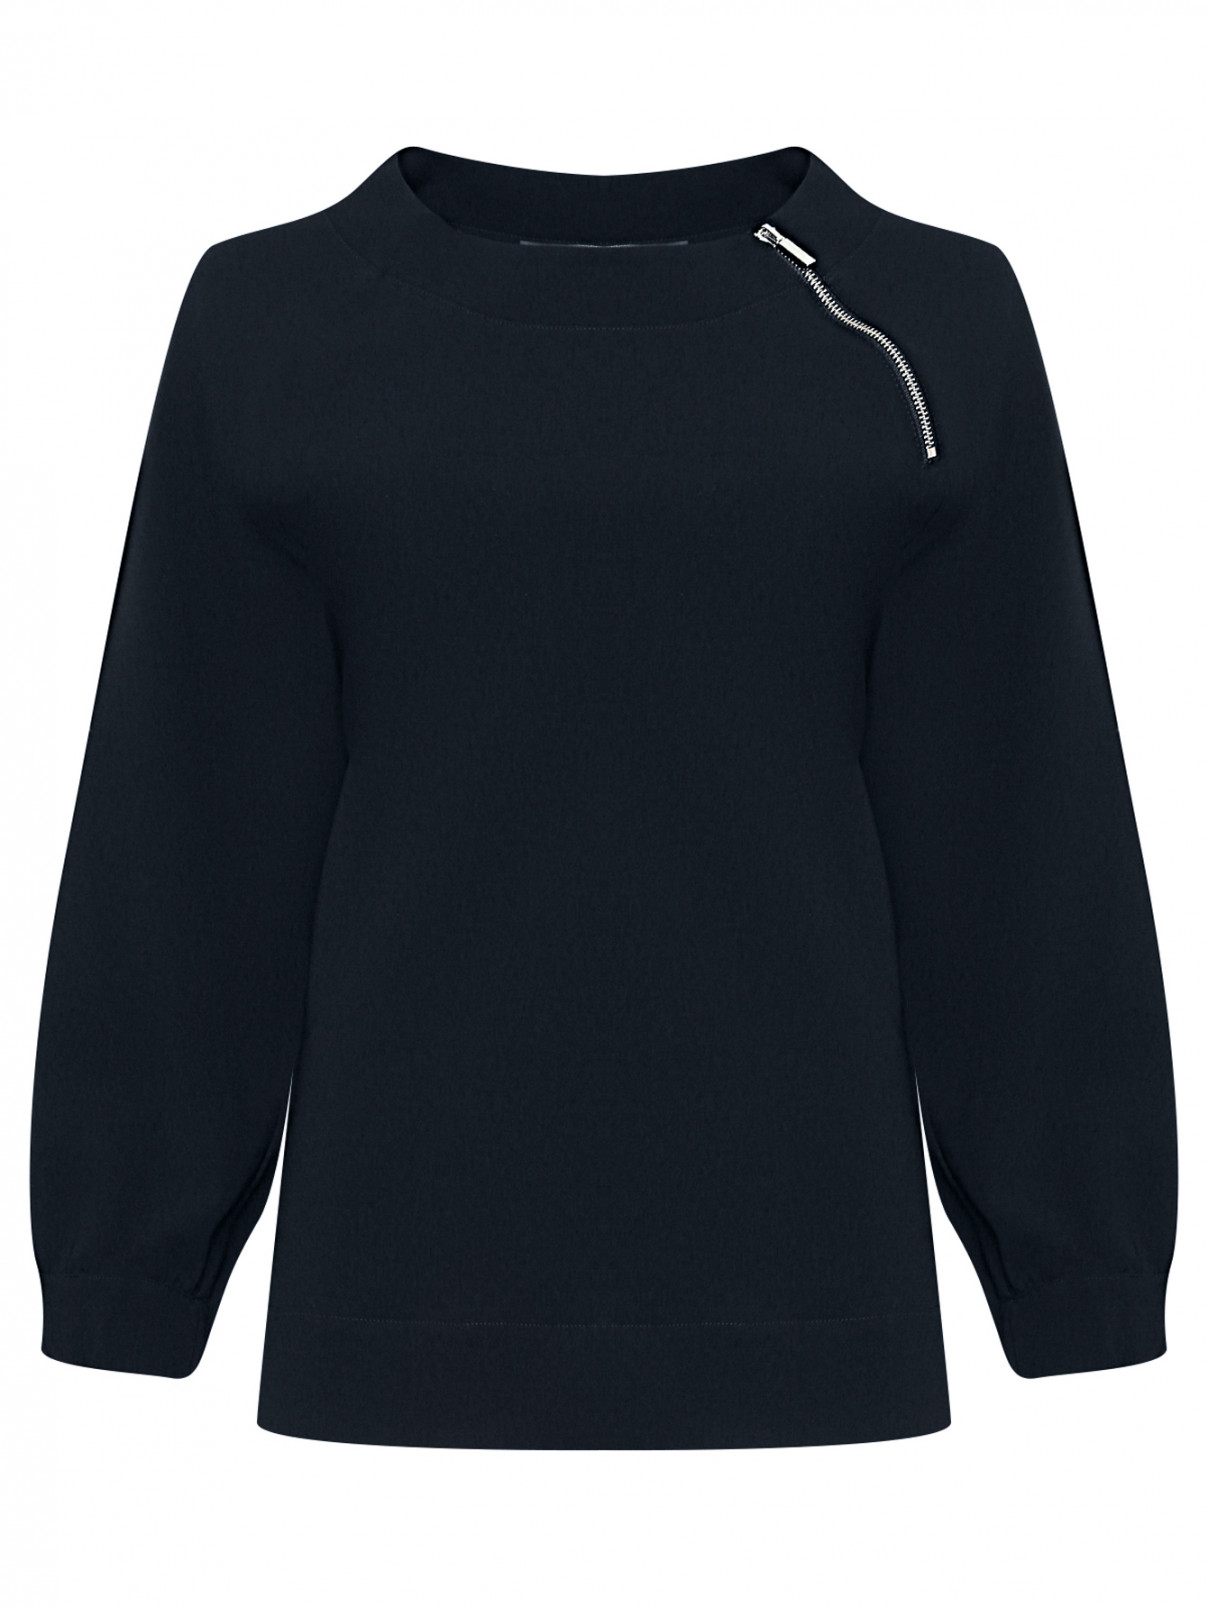 Трикотажная блуза на молнии Marina Rinaldi  –  Общий вид  – Цвет:  Черный